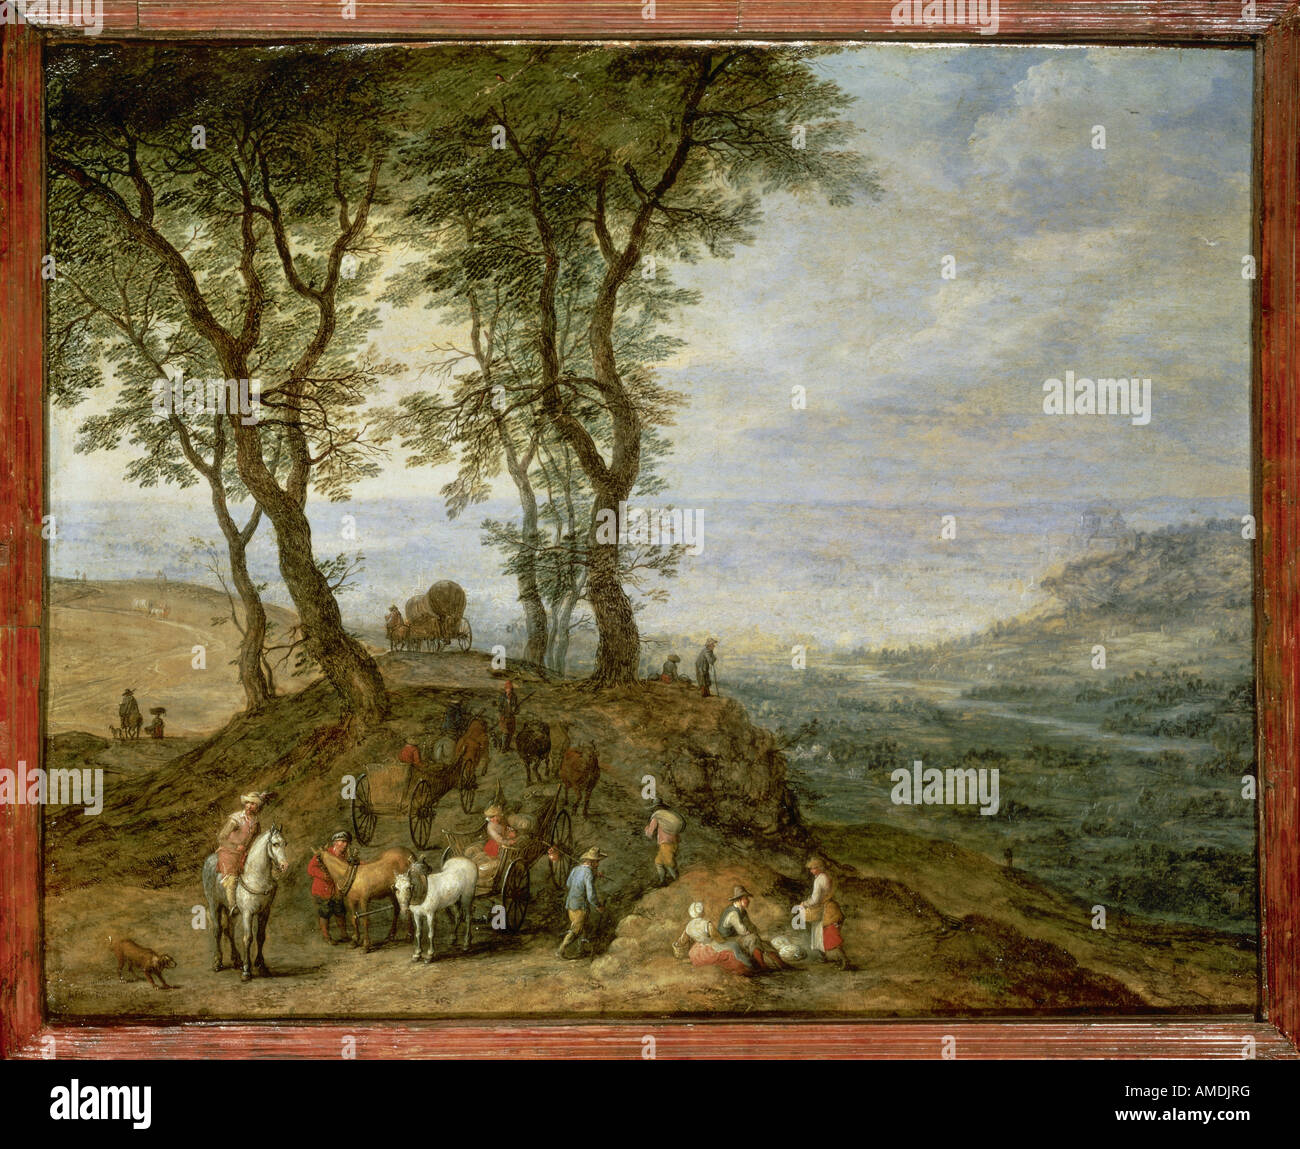 Bildende Kunst, Brueghel, Jan die ältere (1568-1625), Malerei, Rest auf einem Hügel, 1612, Öl auf Kupfer, Alte Pinakothek, München, Flemis Stockfoto